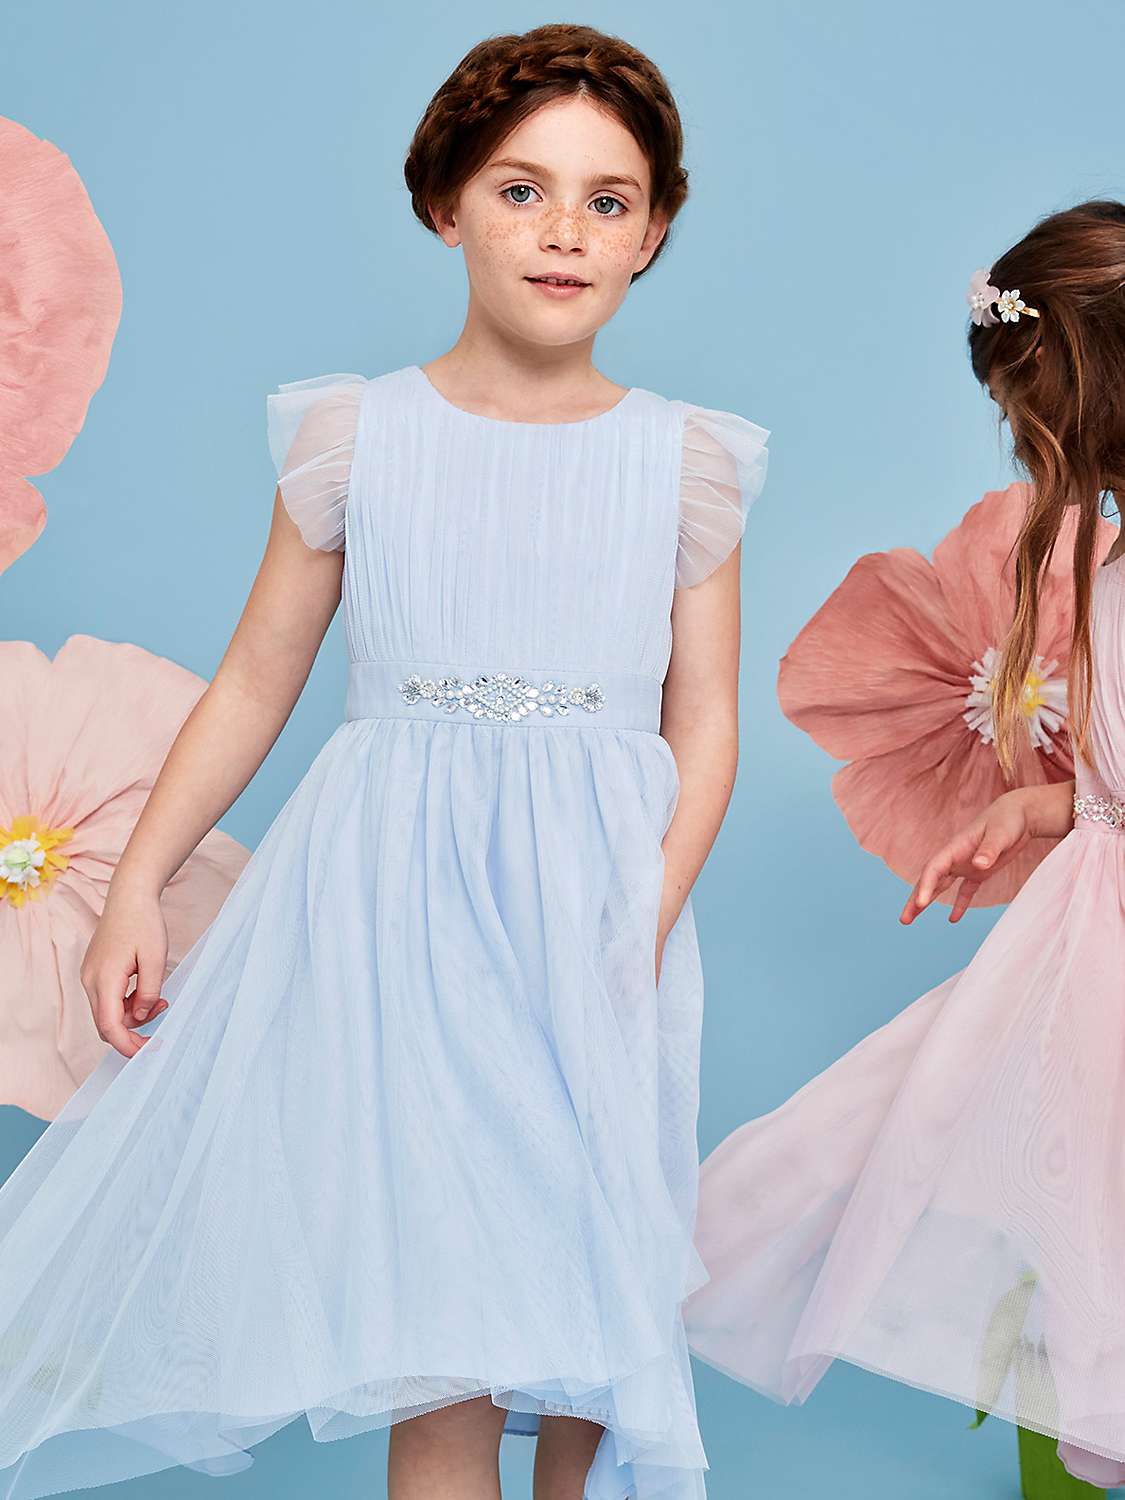 Buy Monsoon Kids' Penelope Belted Dress Online at johnlewis.com